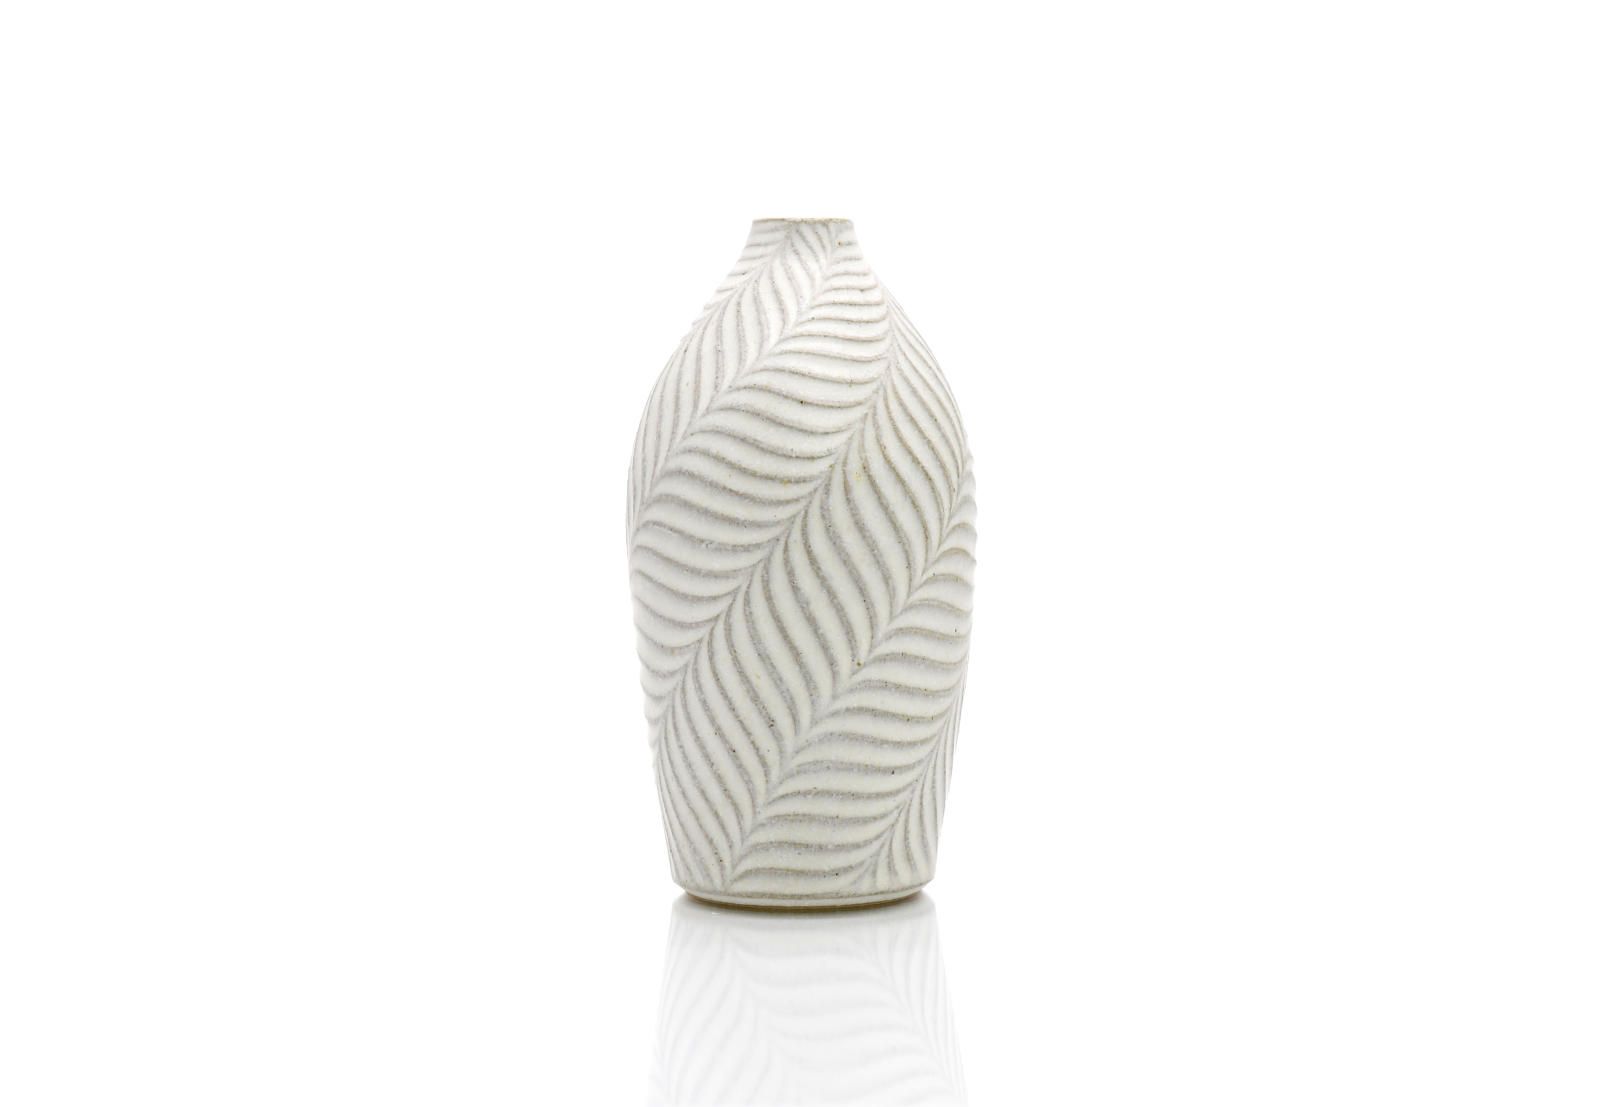 Shinogi Vase by Shinpei Fukushima